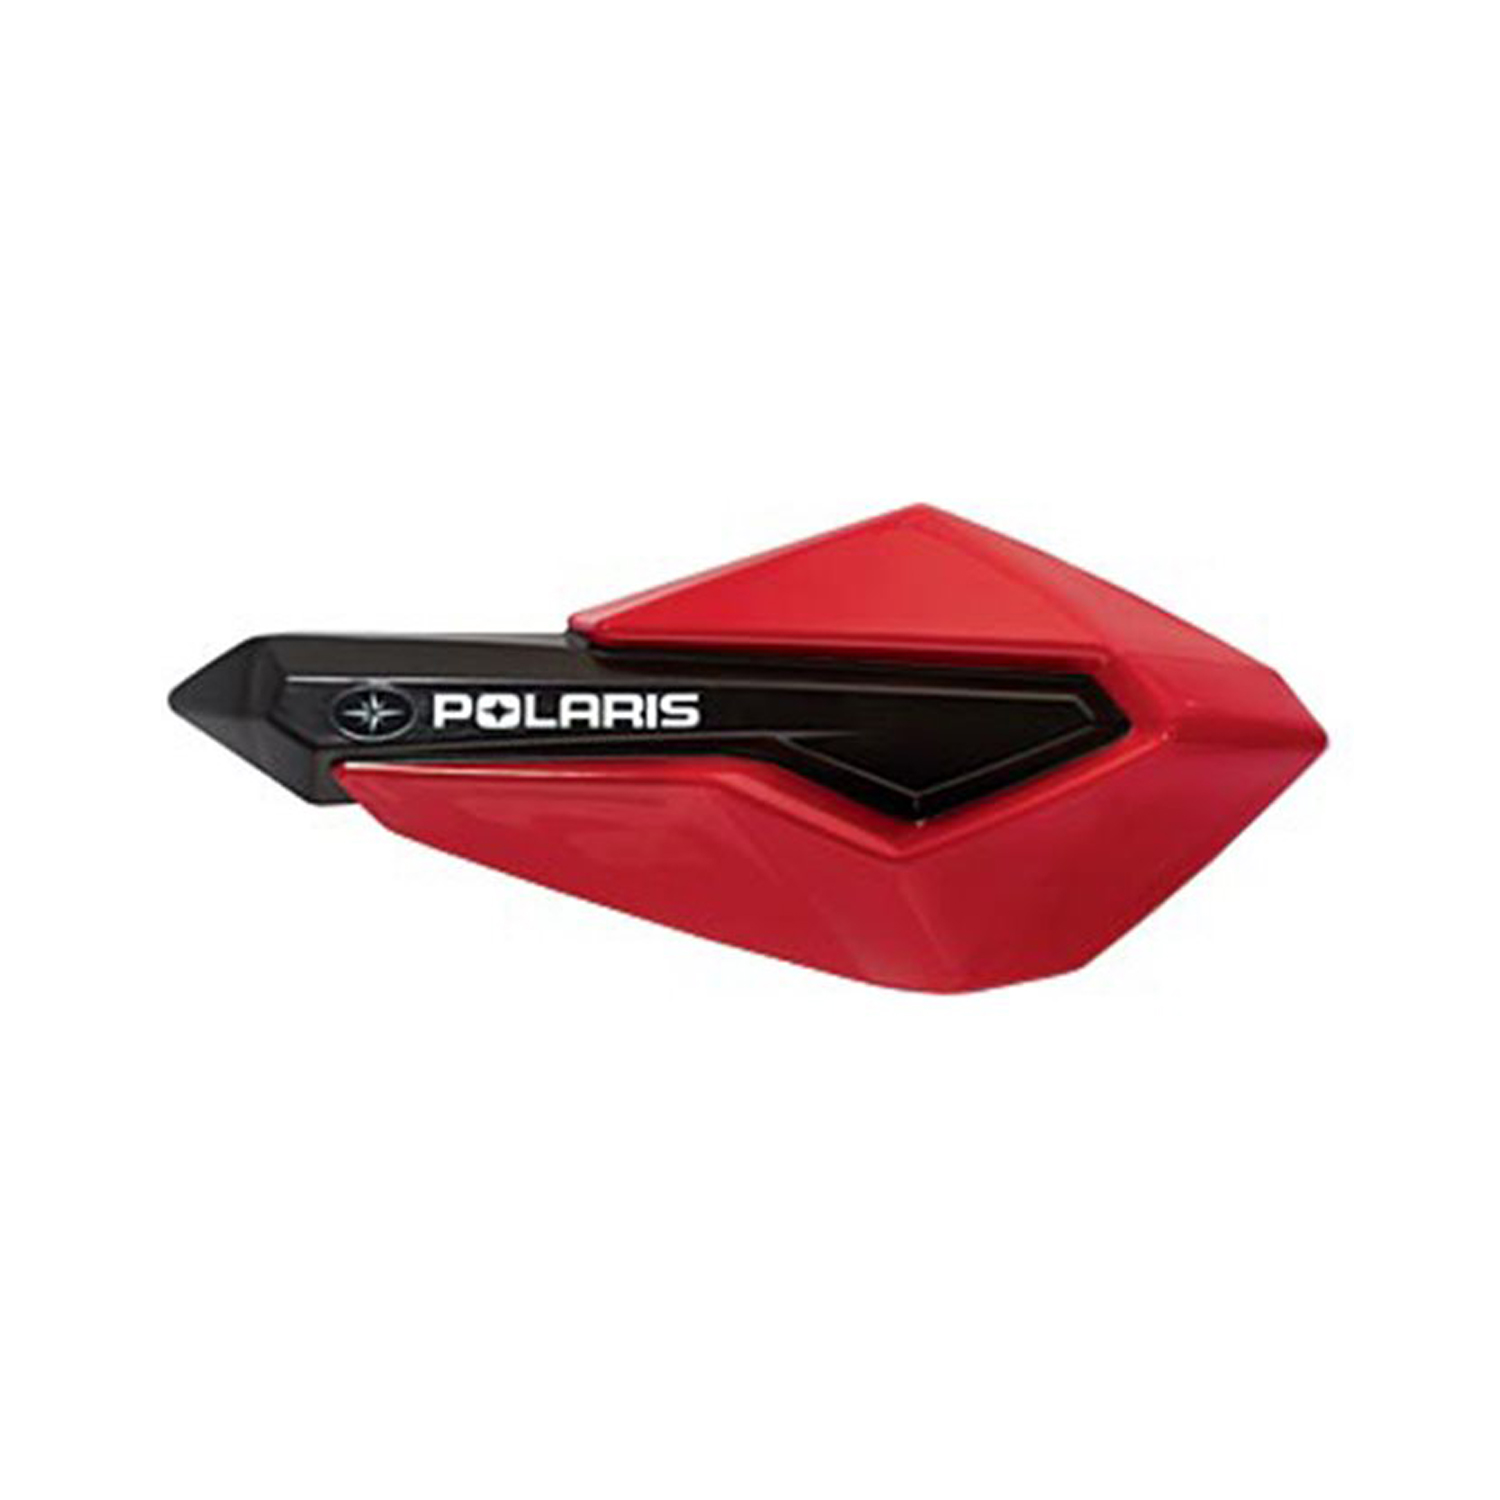 AXYS Pro Rmk Goldfinger Left hand throttle kit for All Polaris Rmk Switchback 